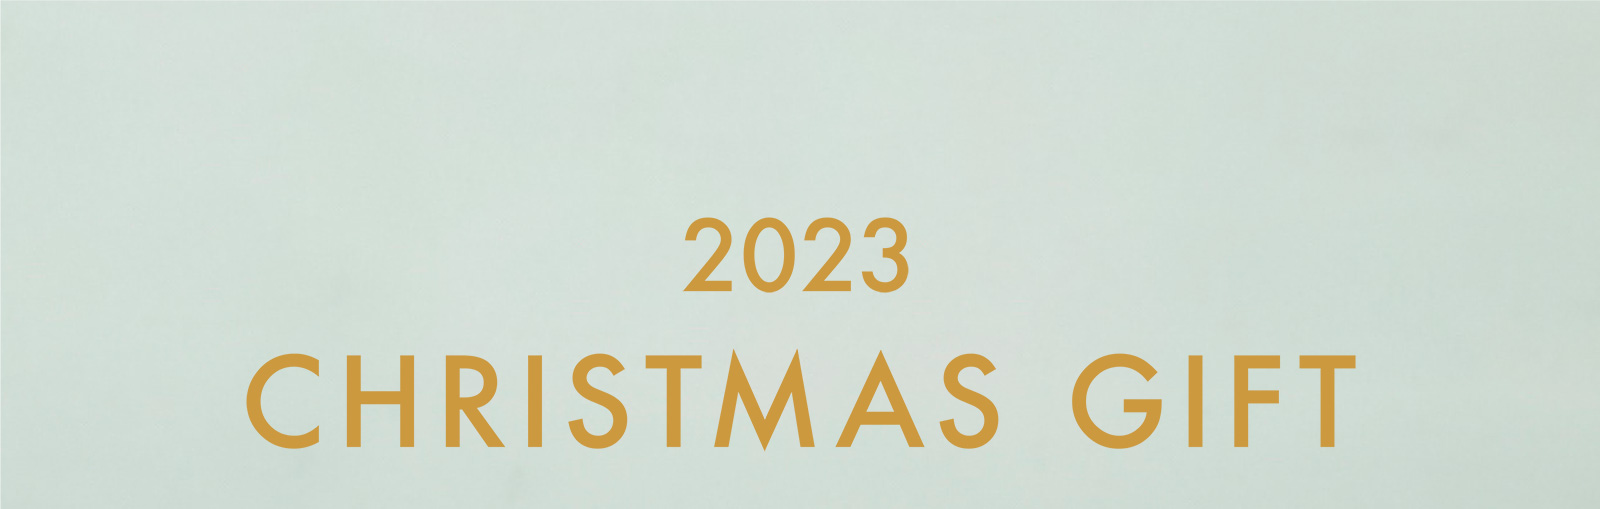 2023 CHRISTMAS GIFT